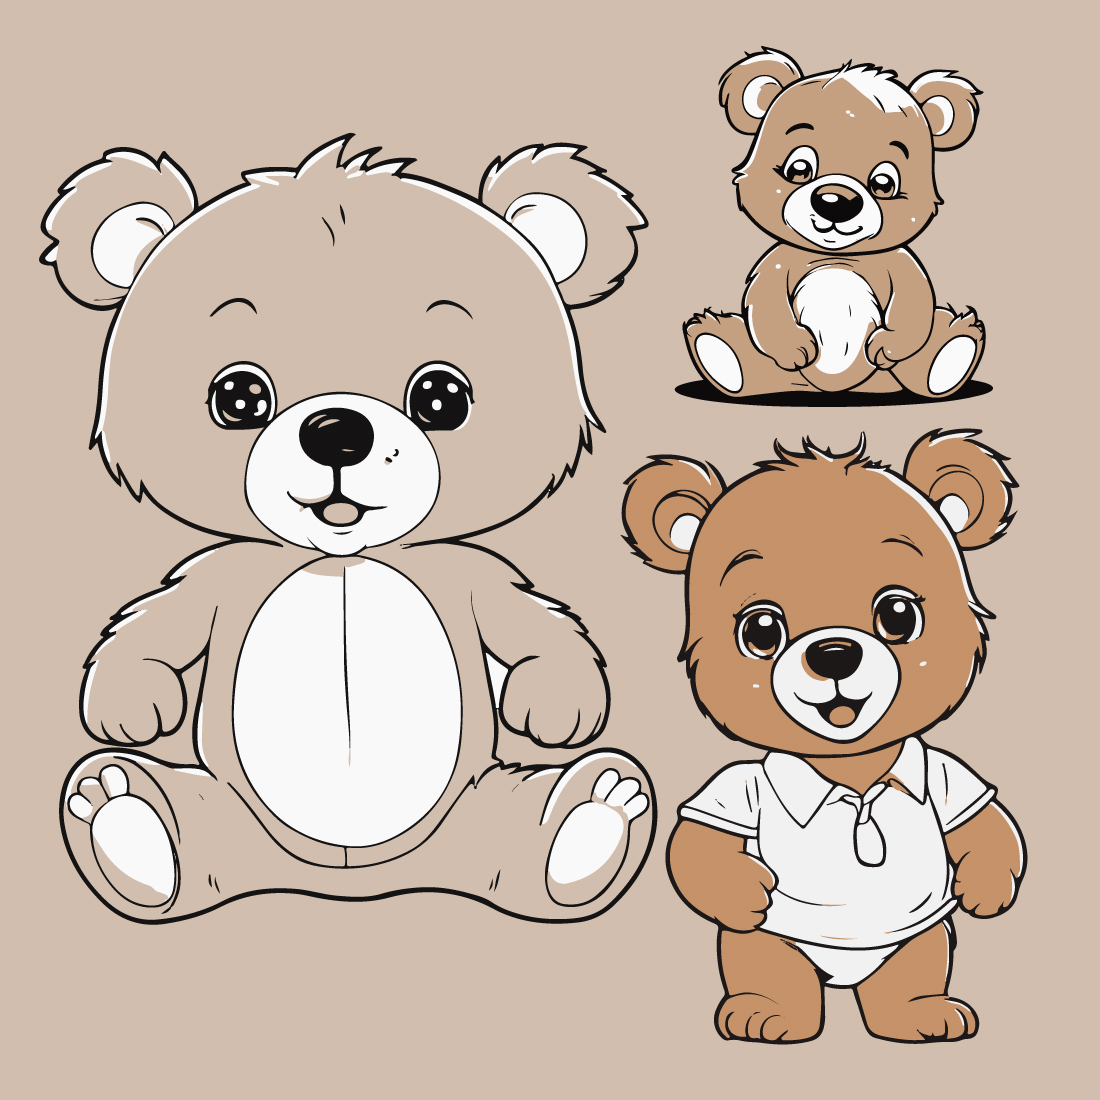 Cartoon cute baby bear line art Sticker and t-shirt design